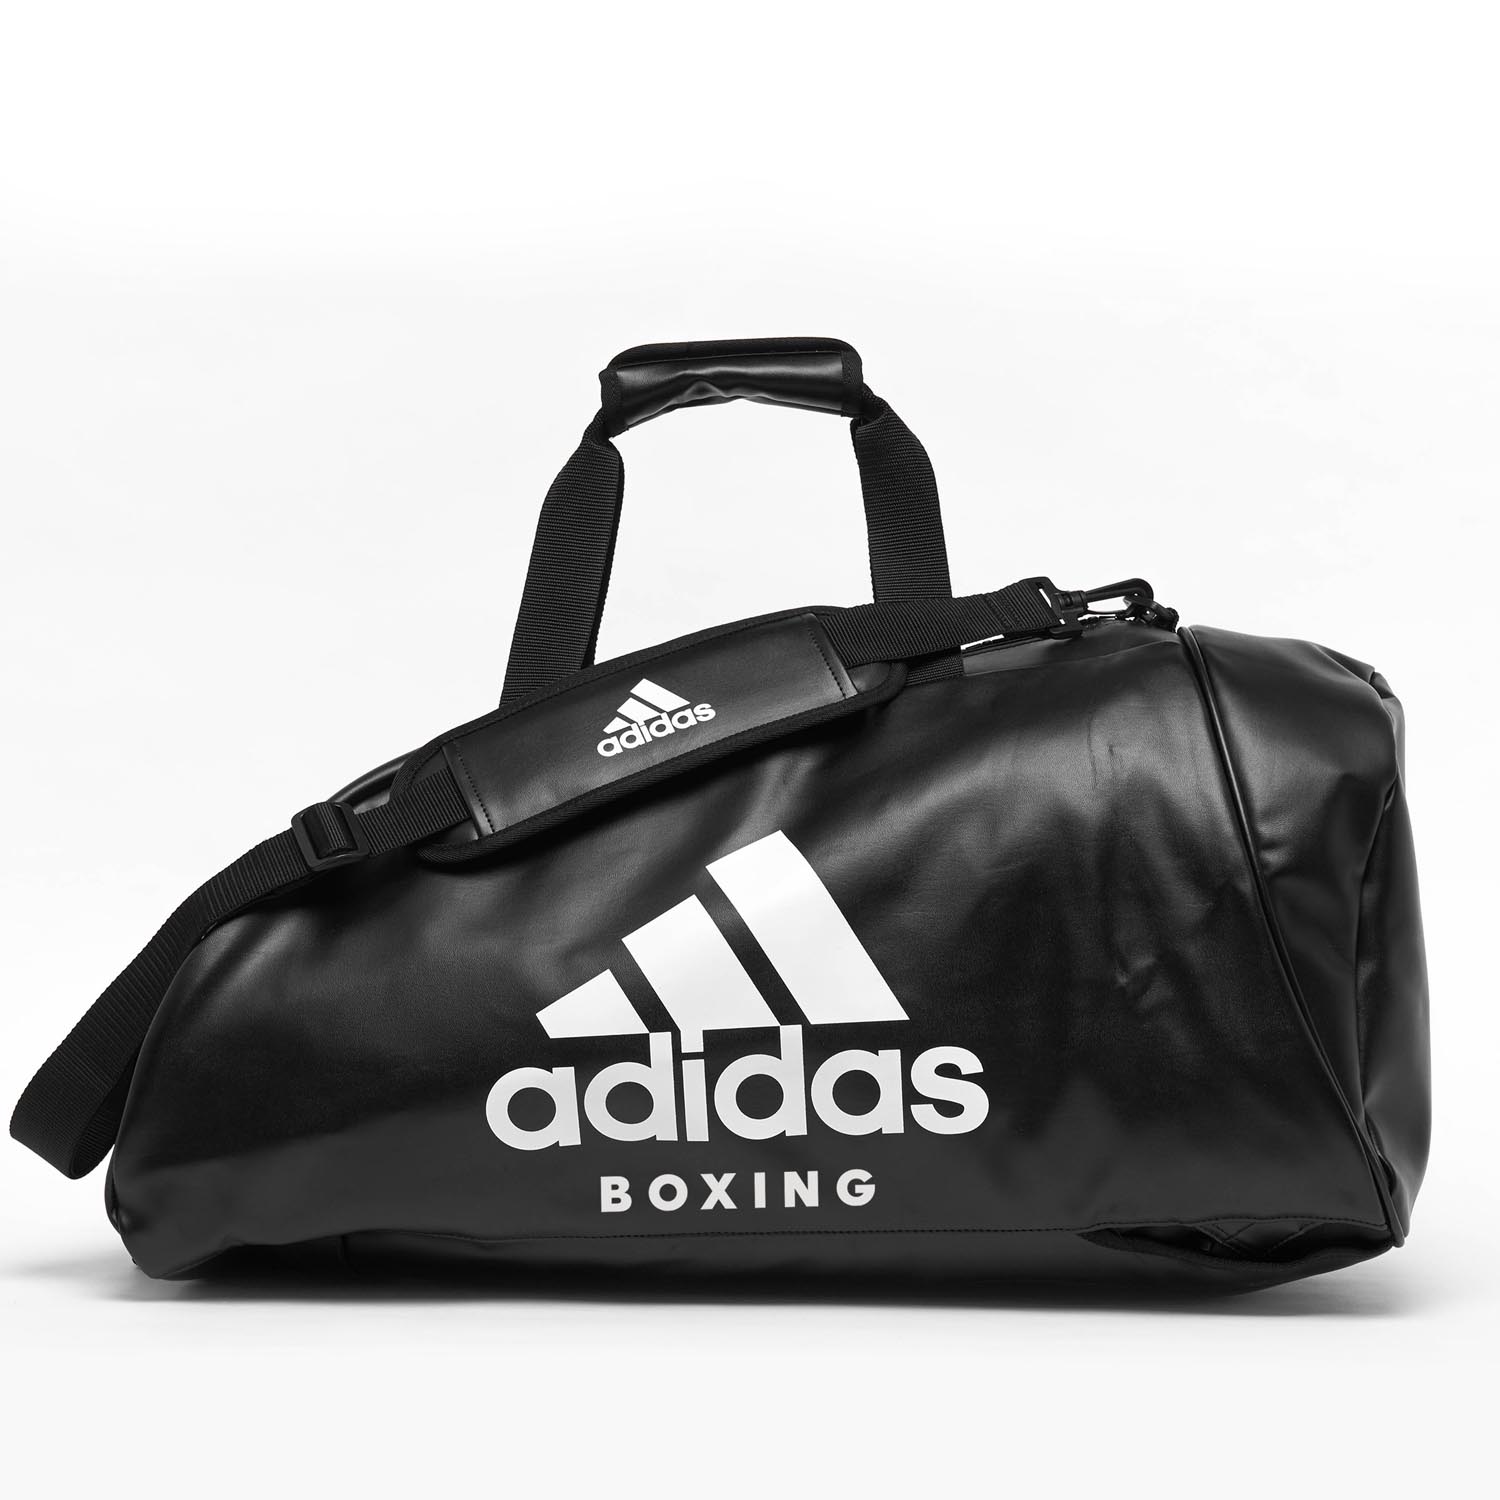 adidas Sporttasche, 2in1 Bag, Boxing, PU M, schwarz-weiß